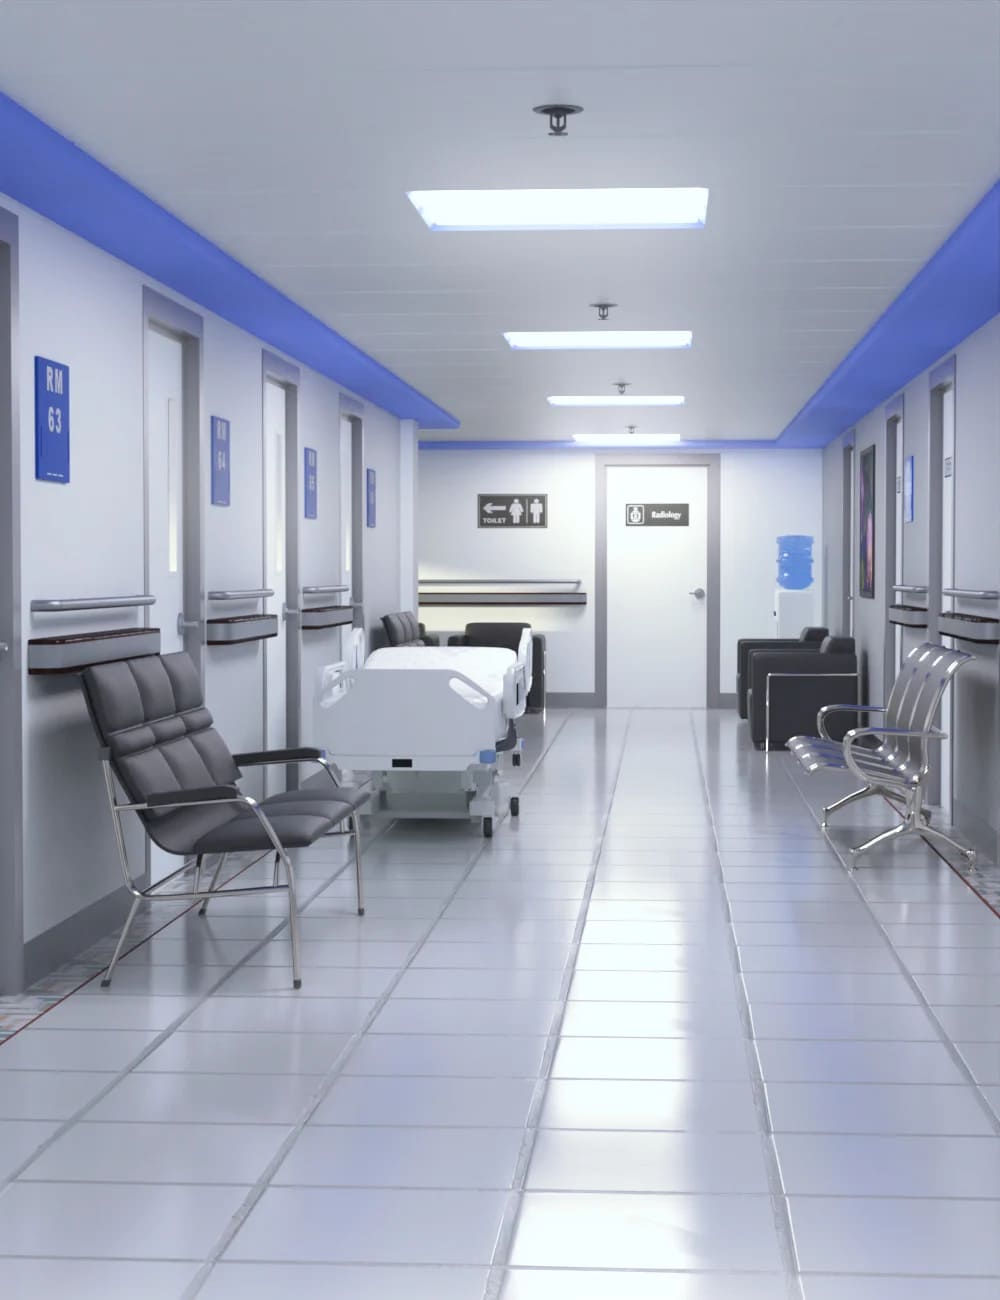 Hospital Hallway_DAZ3DDL